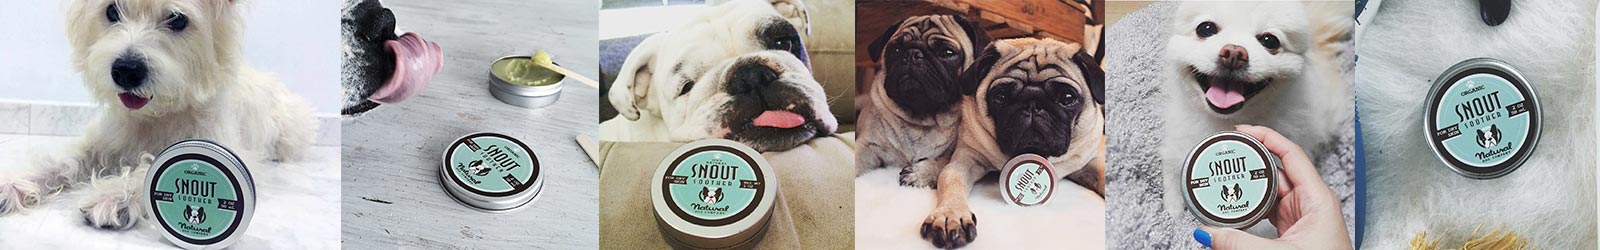 Snout Soother pomáhá při léčbě a prevenci suchého psího čumáku